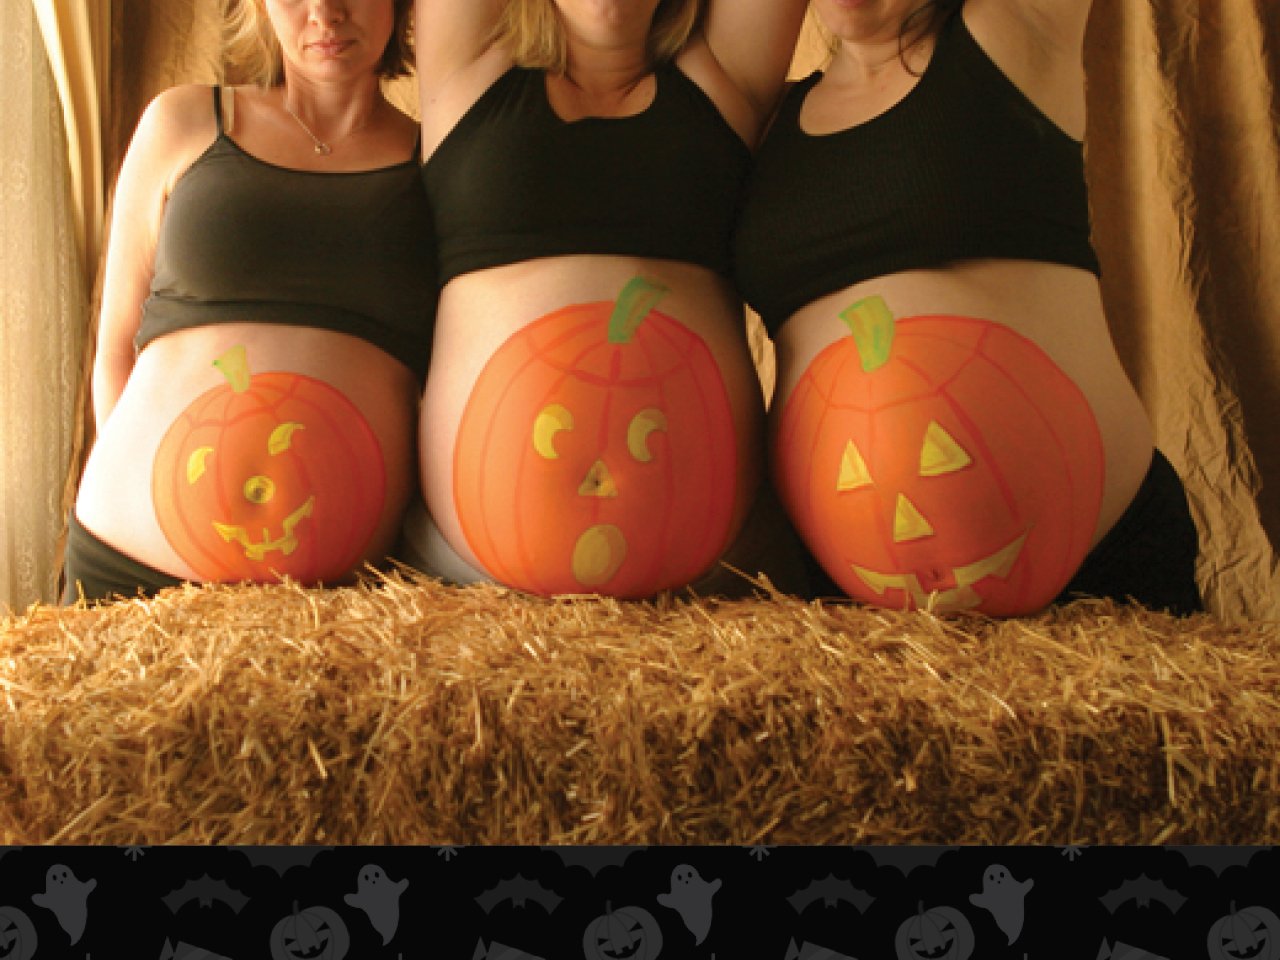 drie vrouwen met pompoenen op hun zwangere buik geschilderd